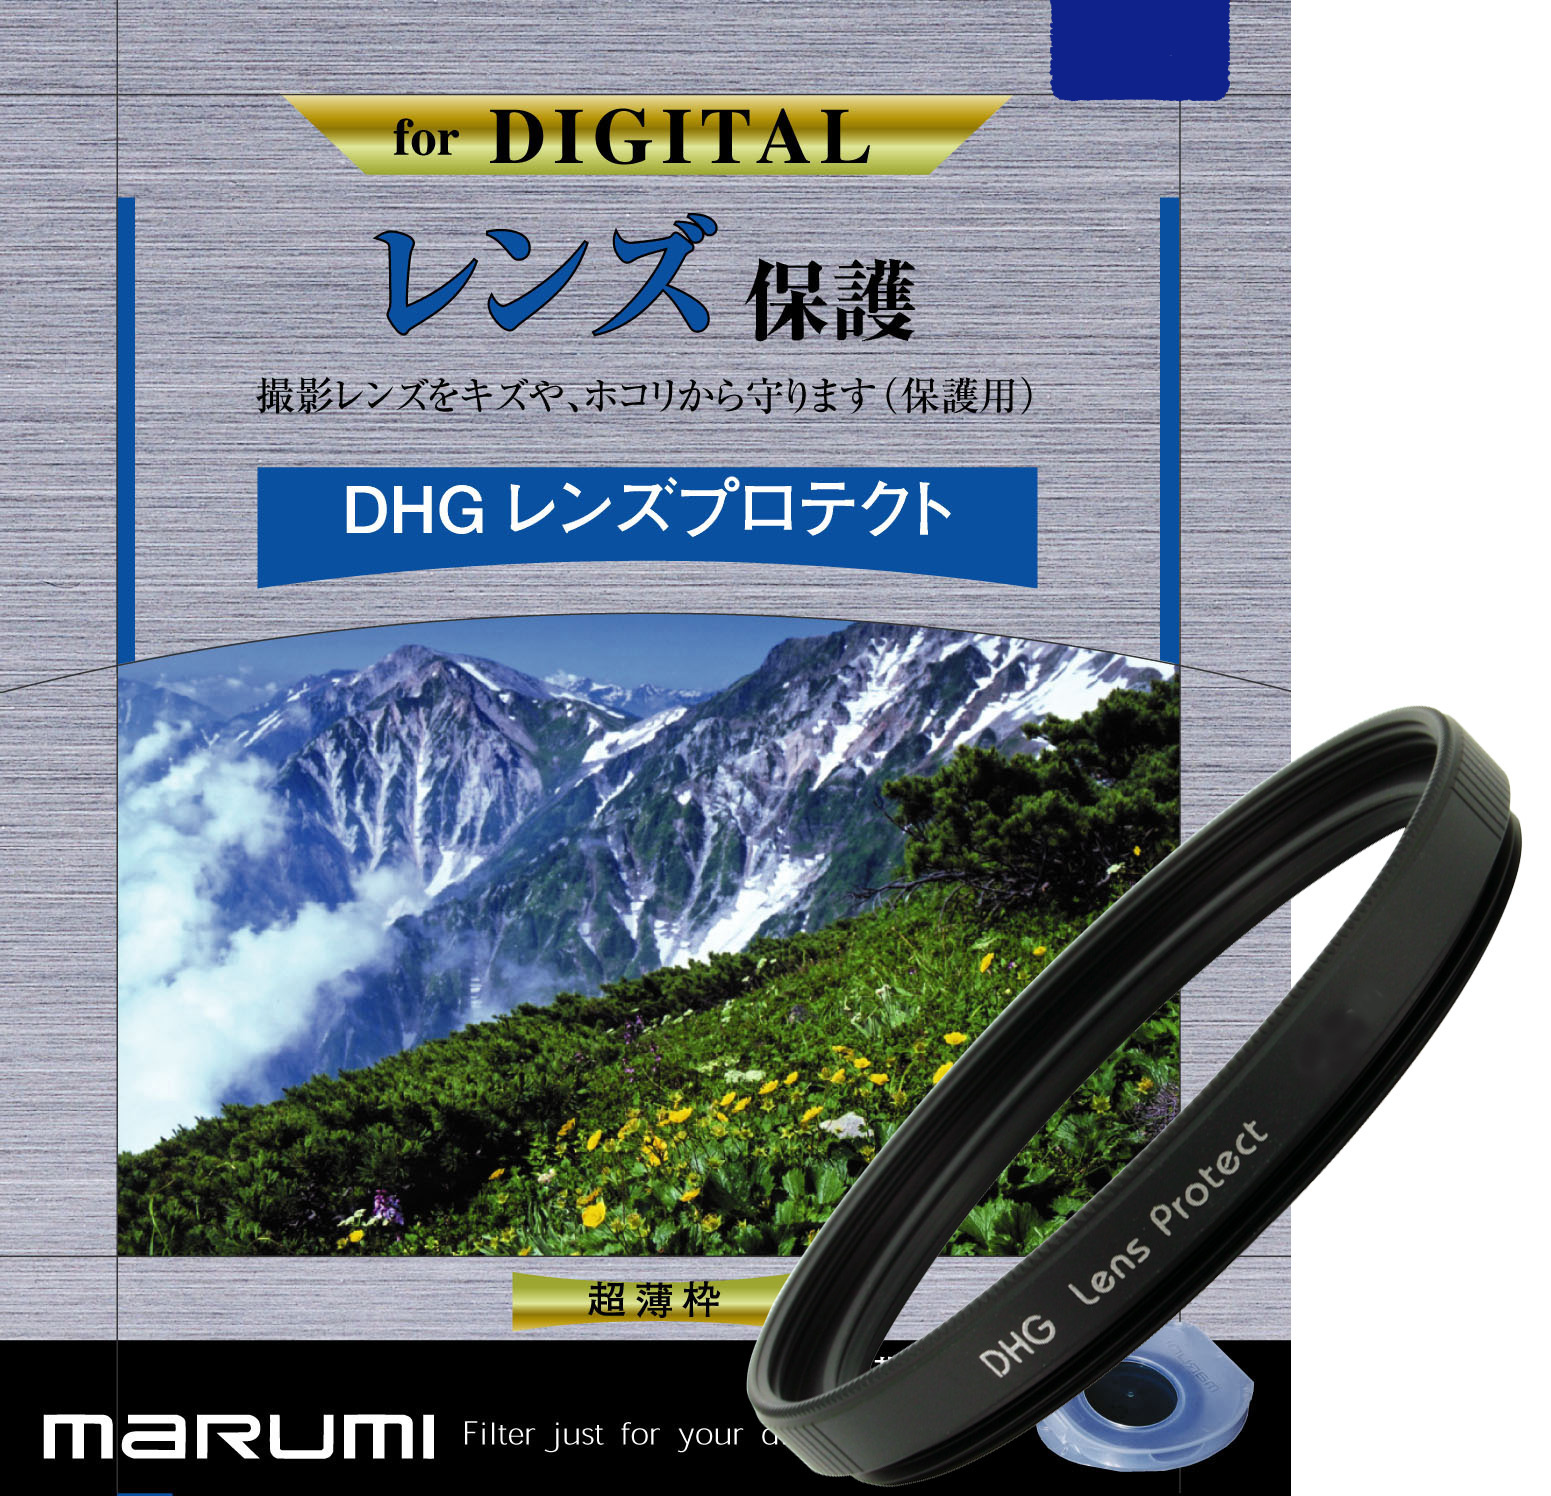 マルミ  DHG レンズプロテクト 49mm [プロテクター] MARUMI